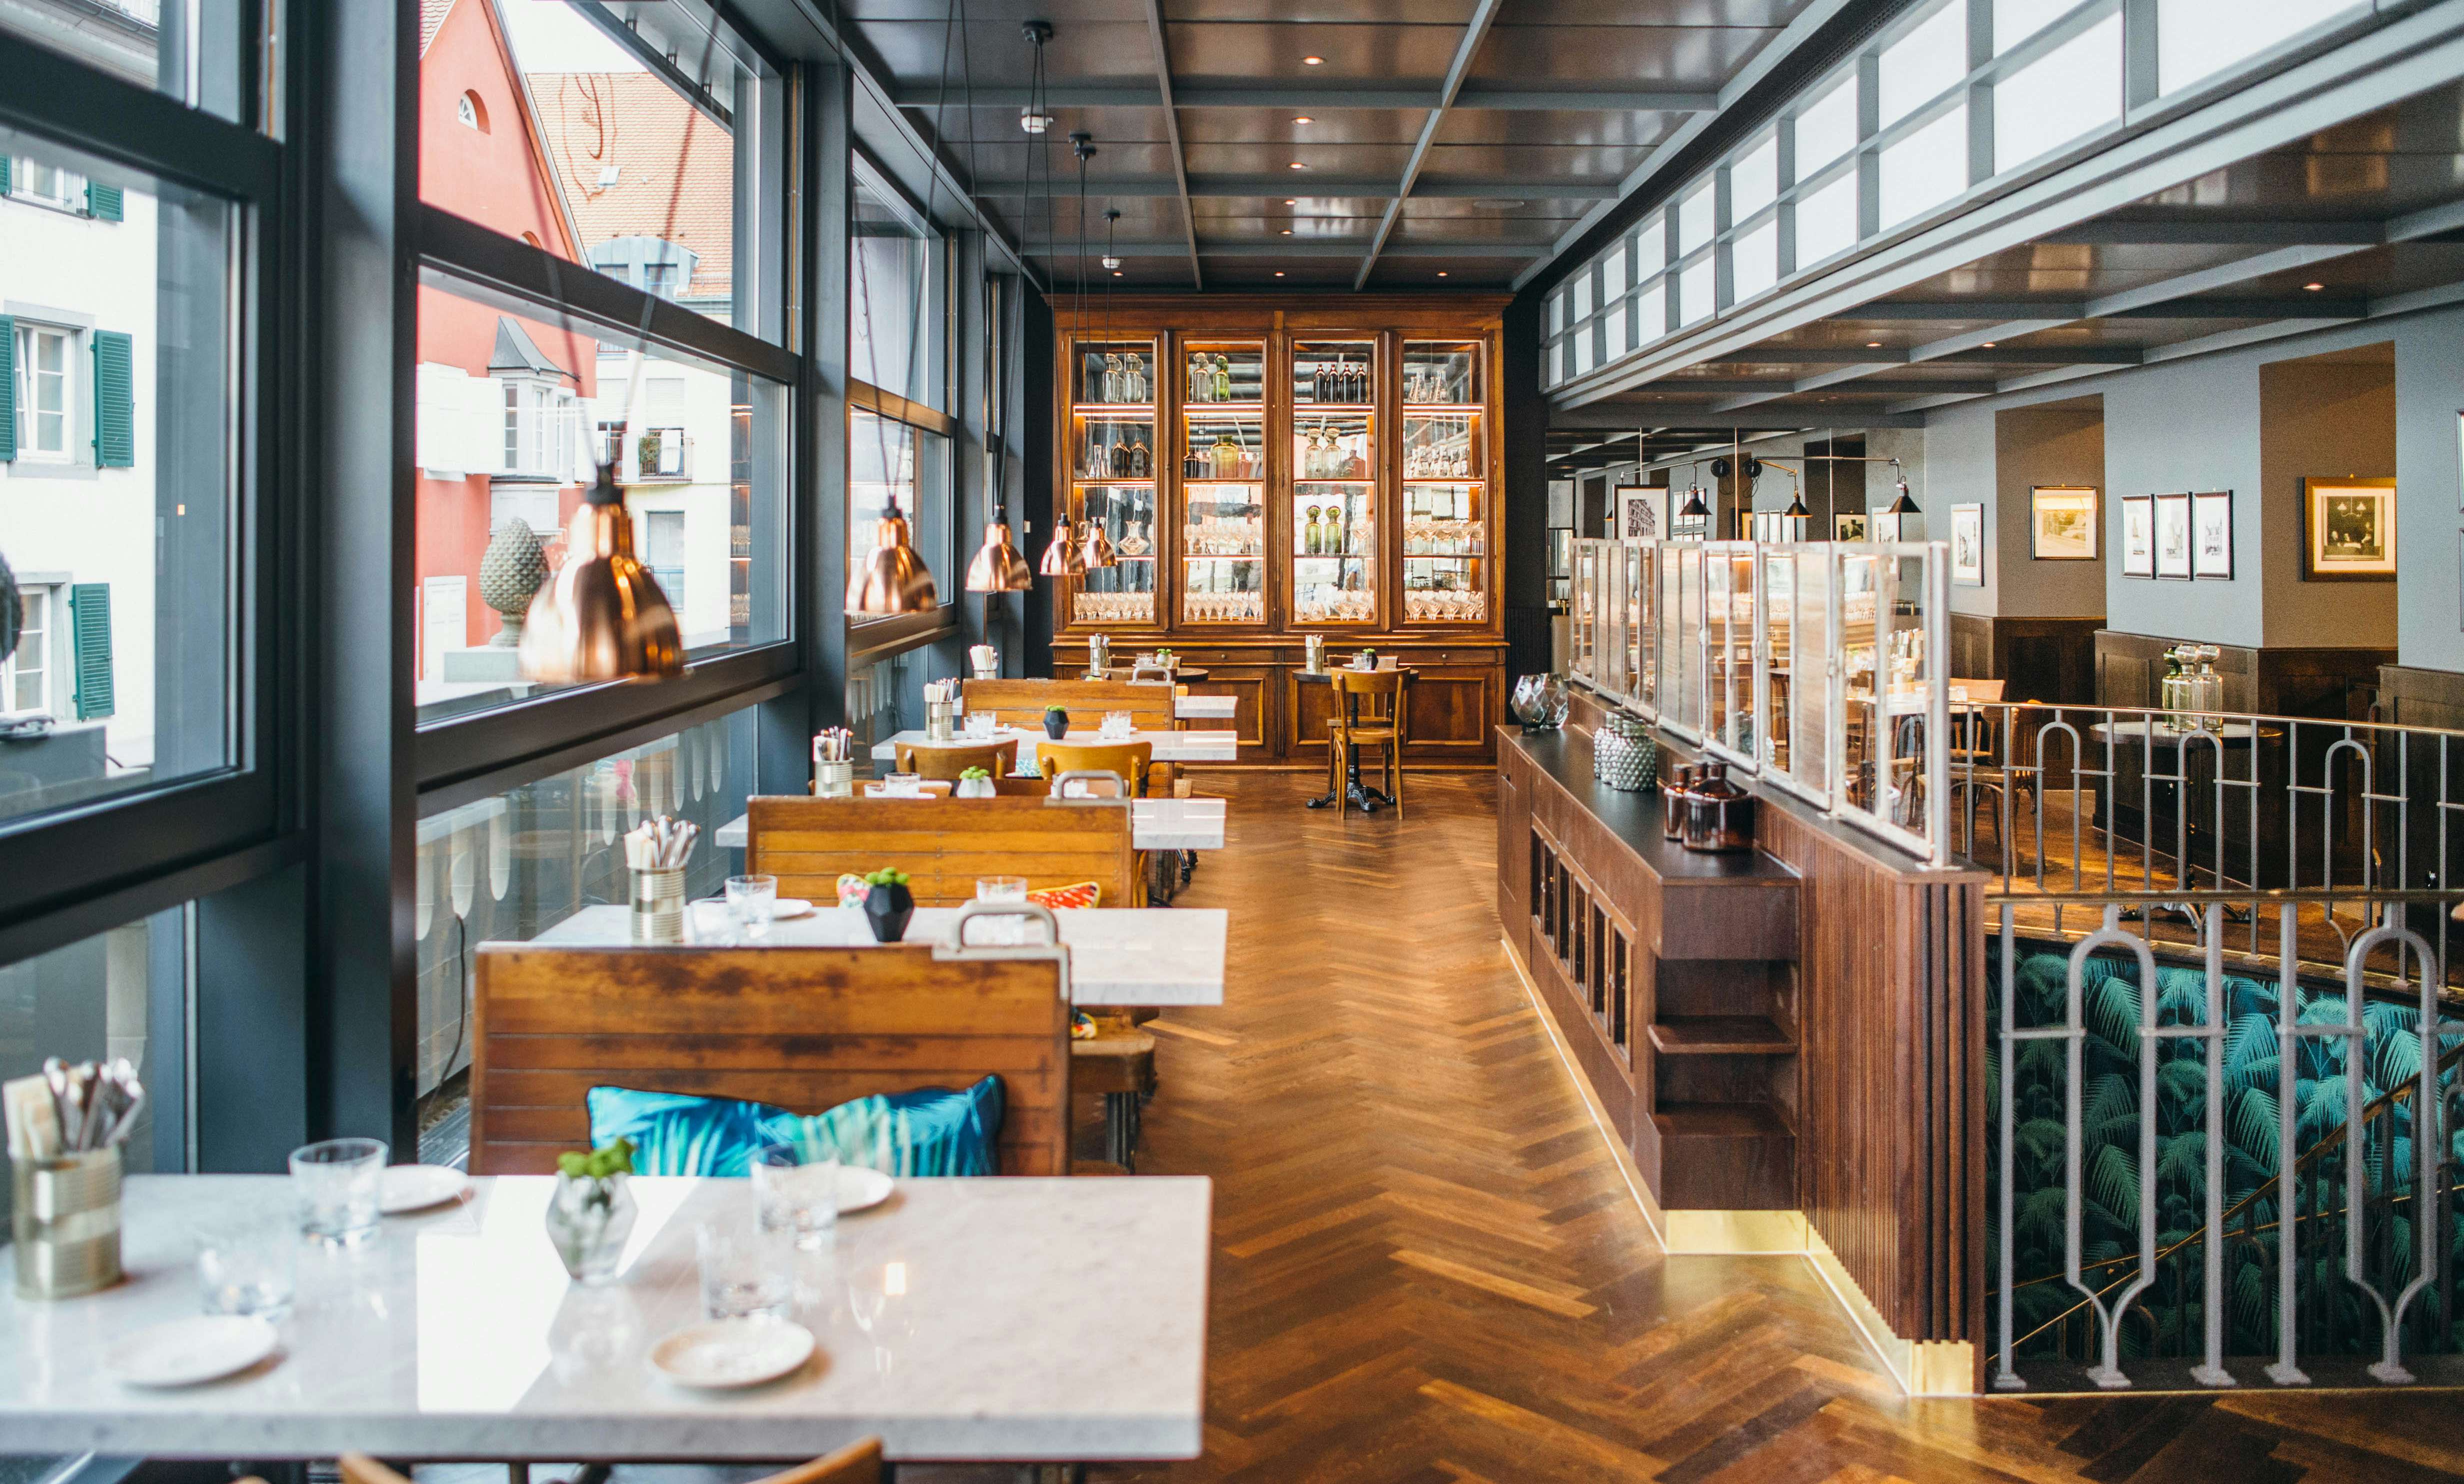 Brasserie Colette Konstanz - Modernes Französisches Restaurant in Konstanz mit gemütlicher Einrichtung